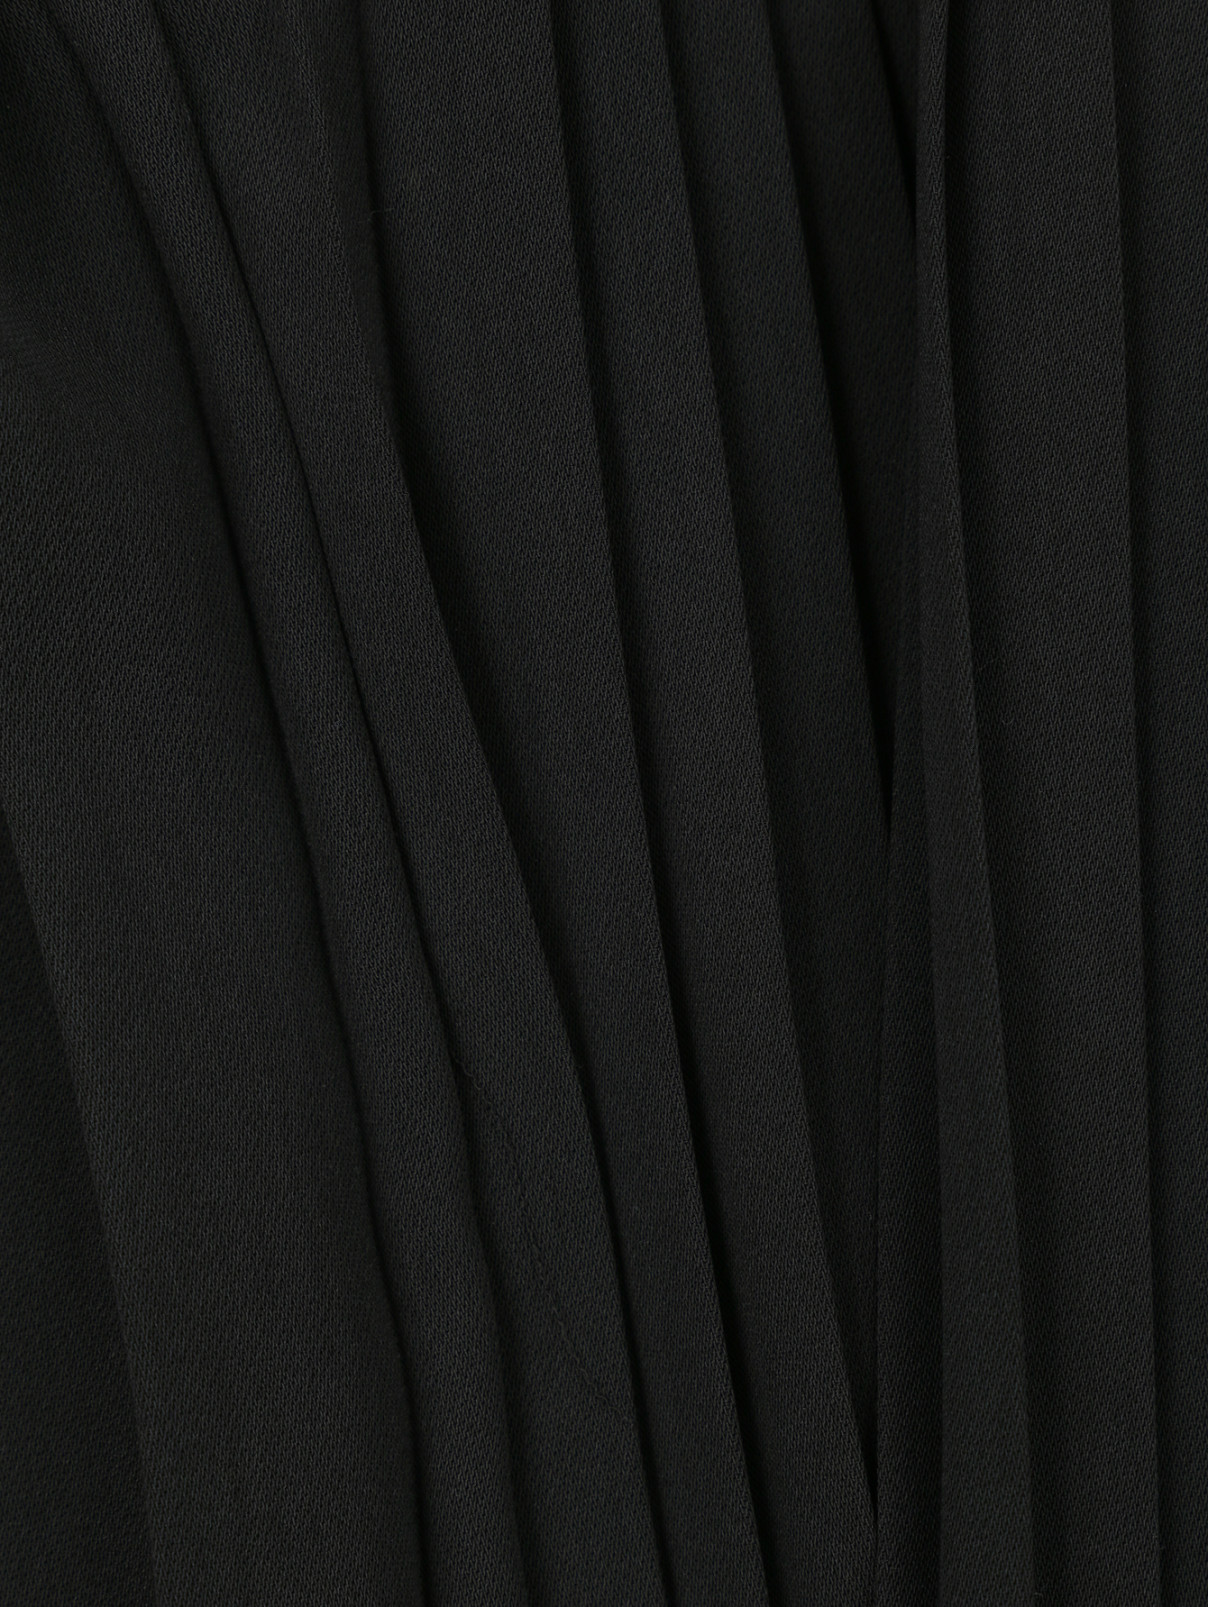 Плиссированная юбка со вставкой N21  –  Деталь  – Цвет:  Черный